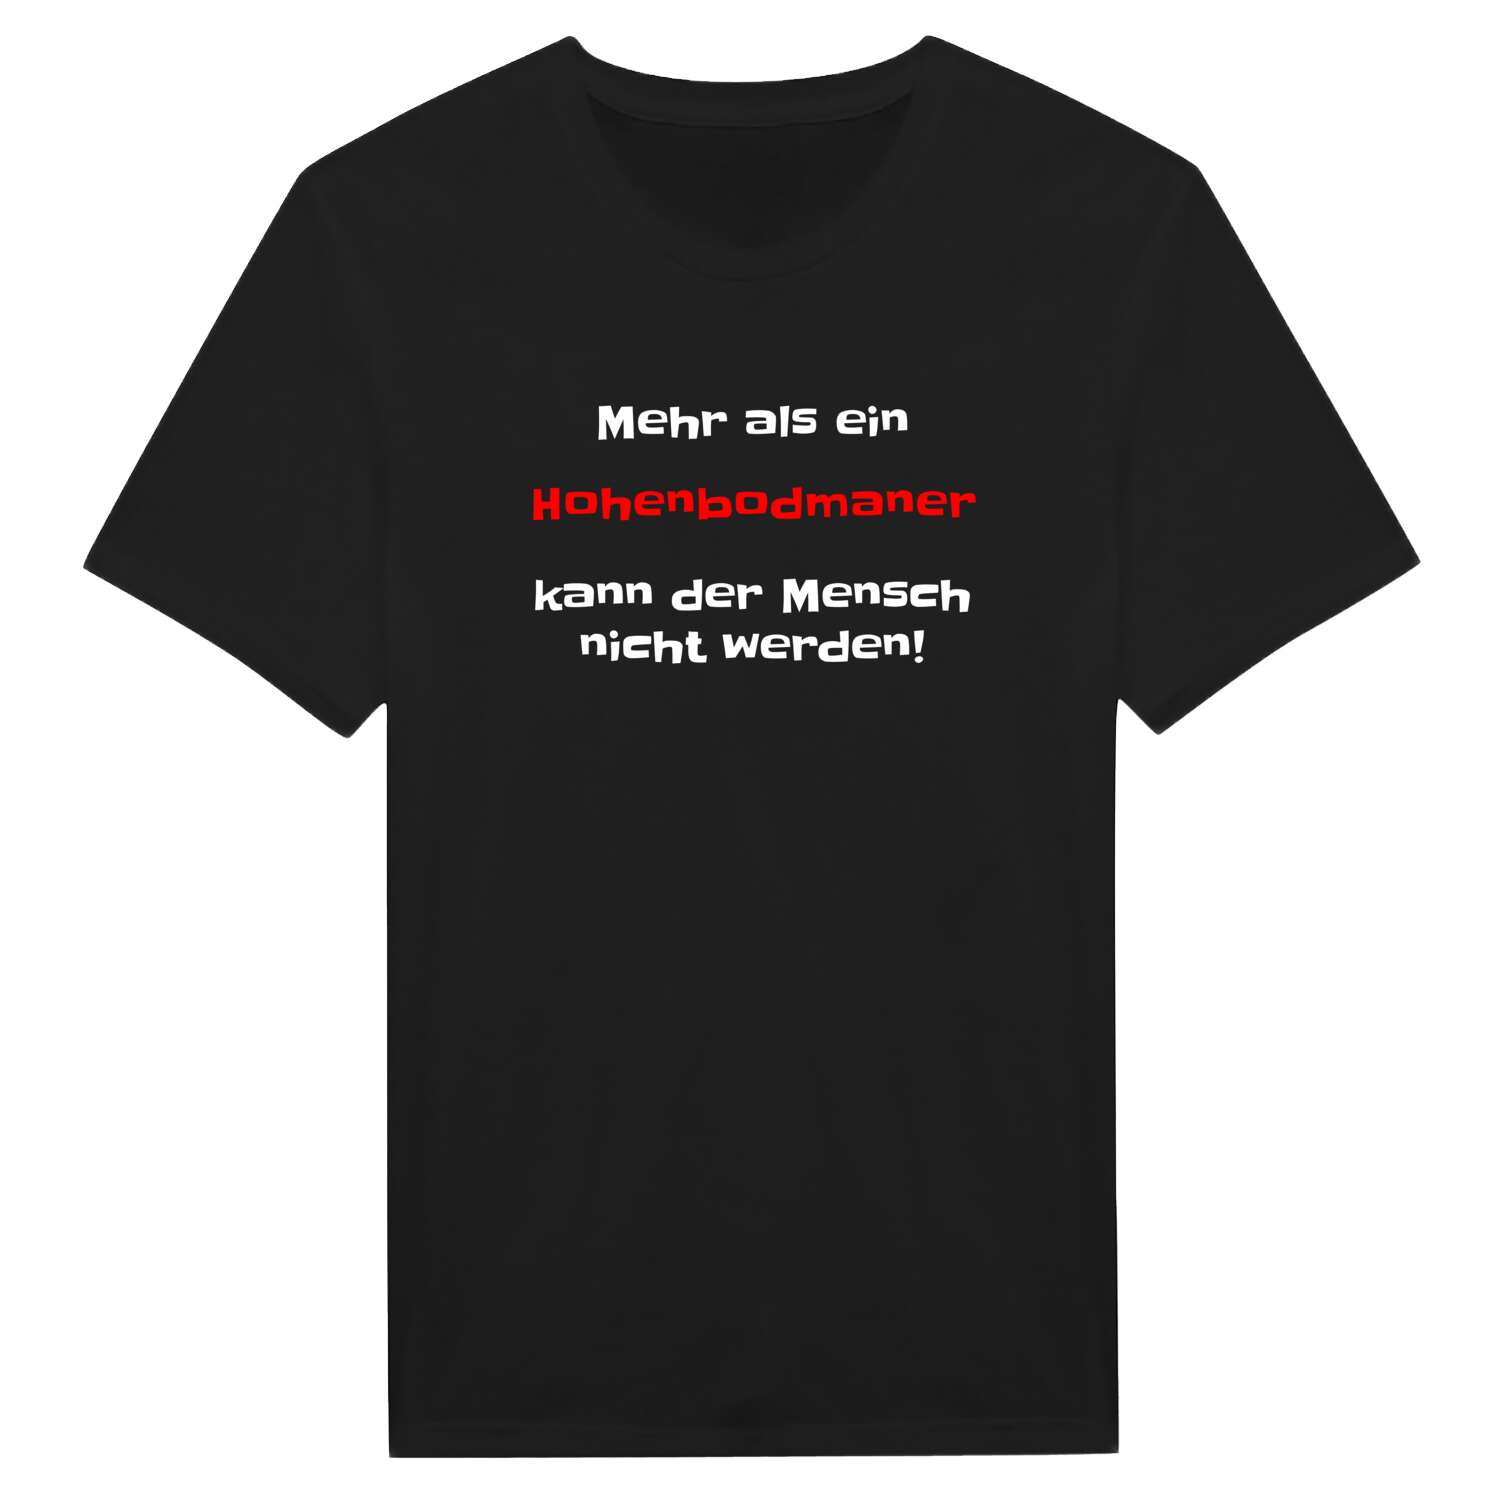 Hohenbodman T-Shirt »Mehr als ein«